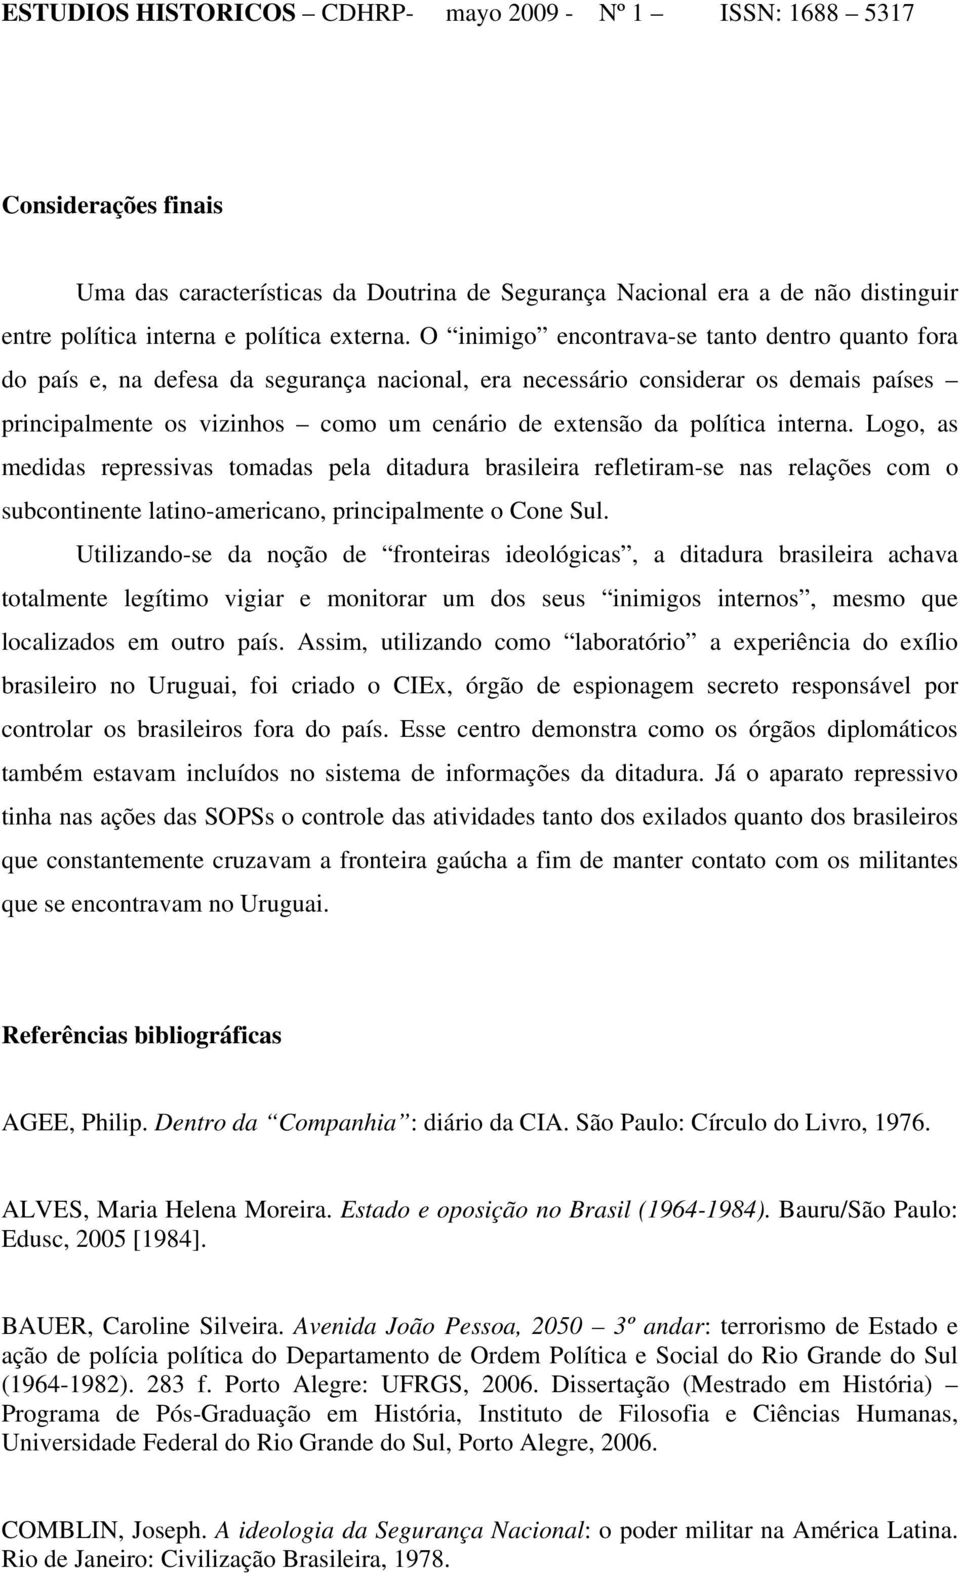 política interna. Logo, as medidas repressivas tomadas pela ditadura brasileira refletiram-se nas relações com o subcontinente latino-americano, principalmente o Cone Sul.